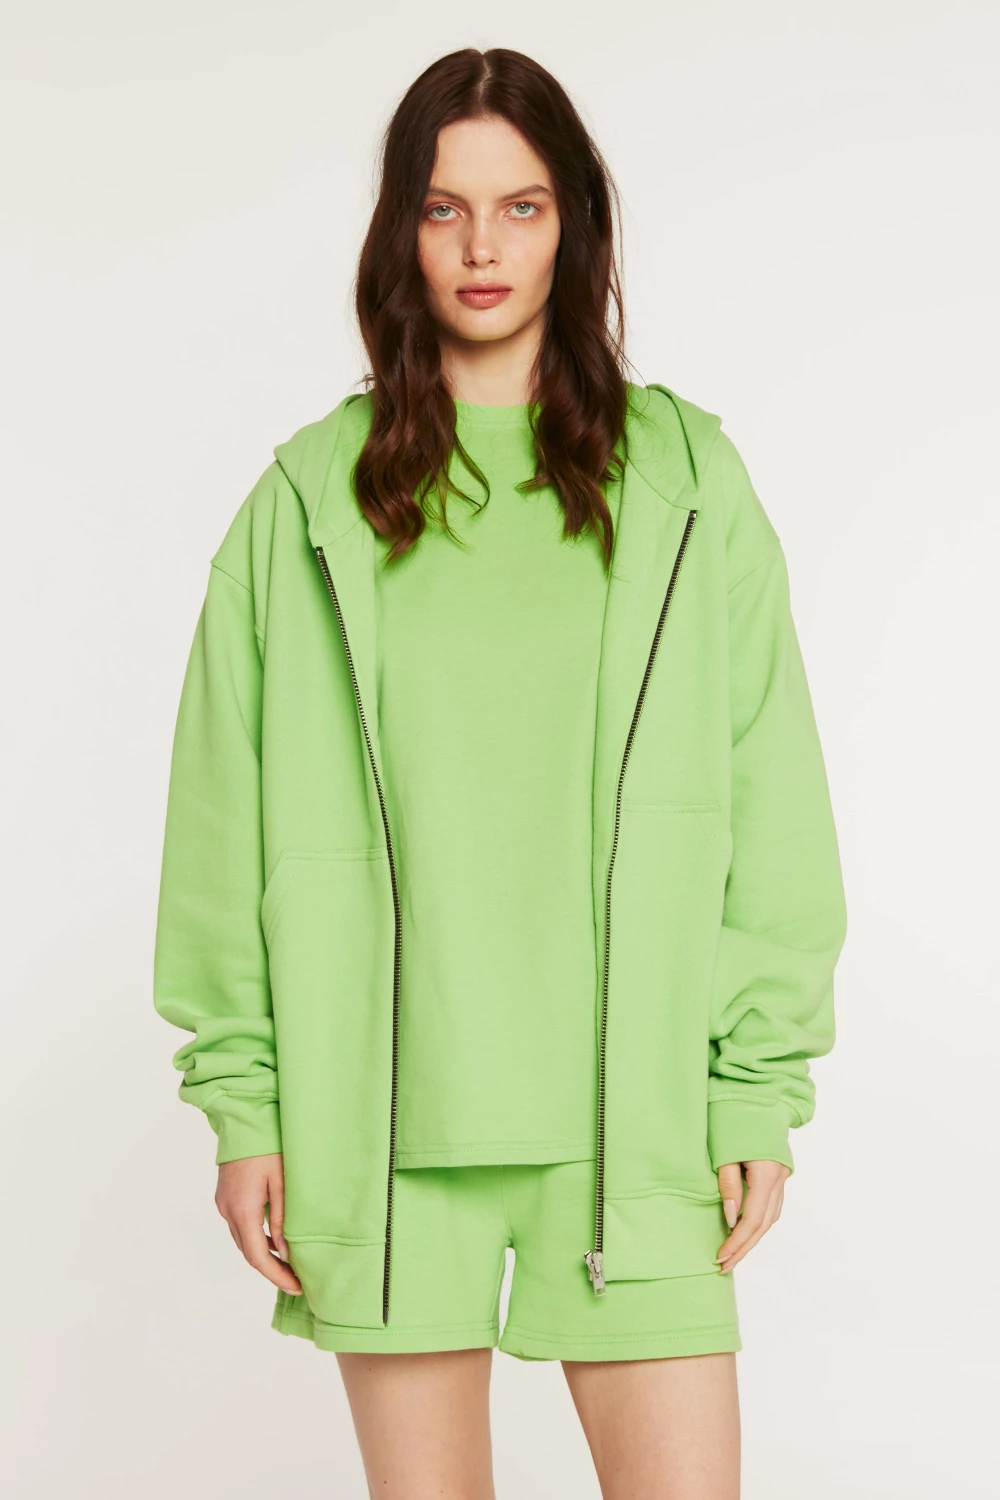 zip-up hoodie in jasmine color